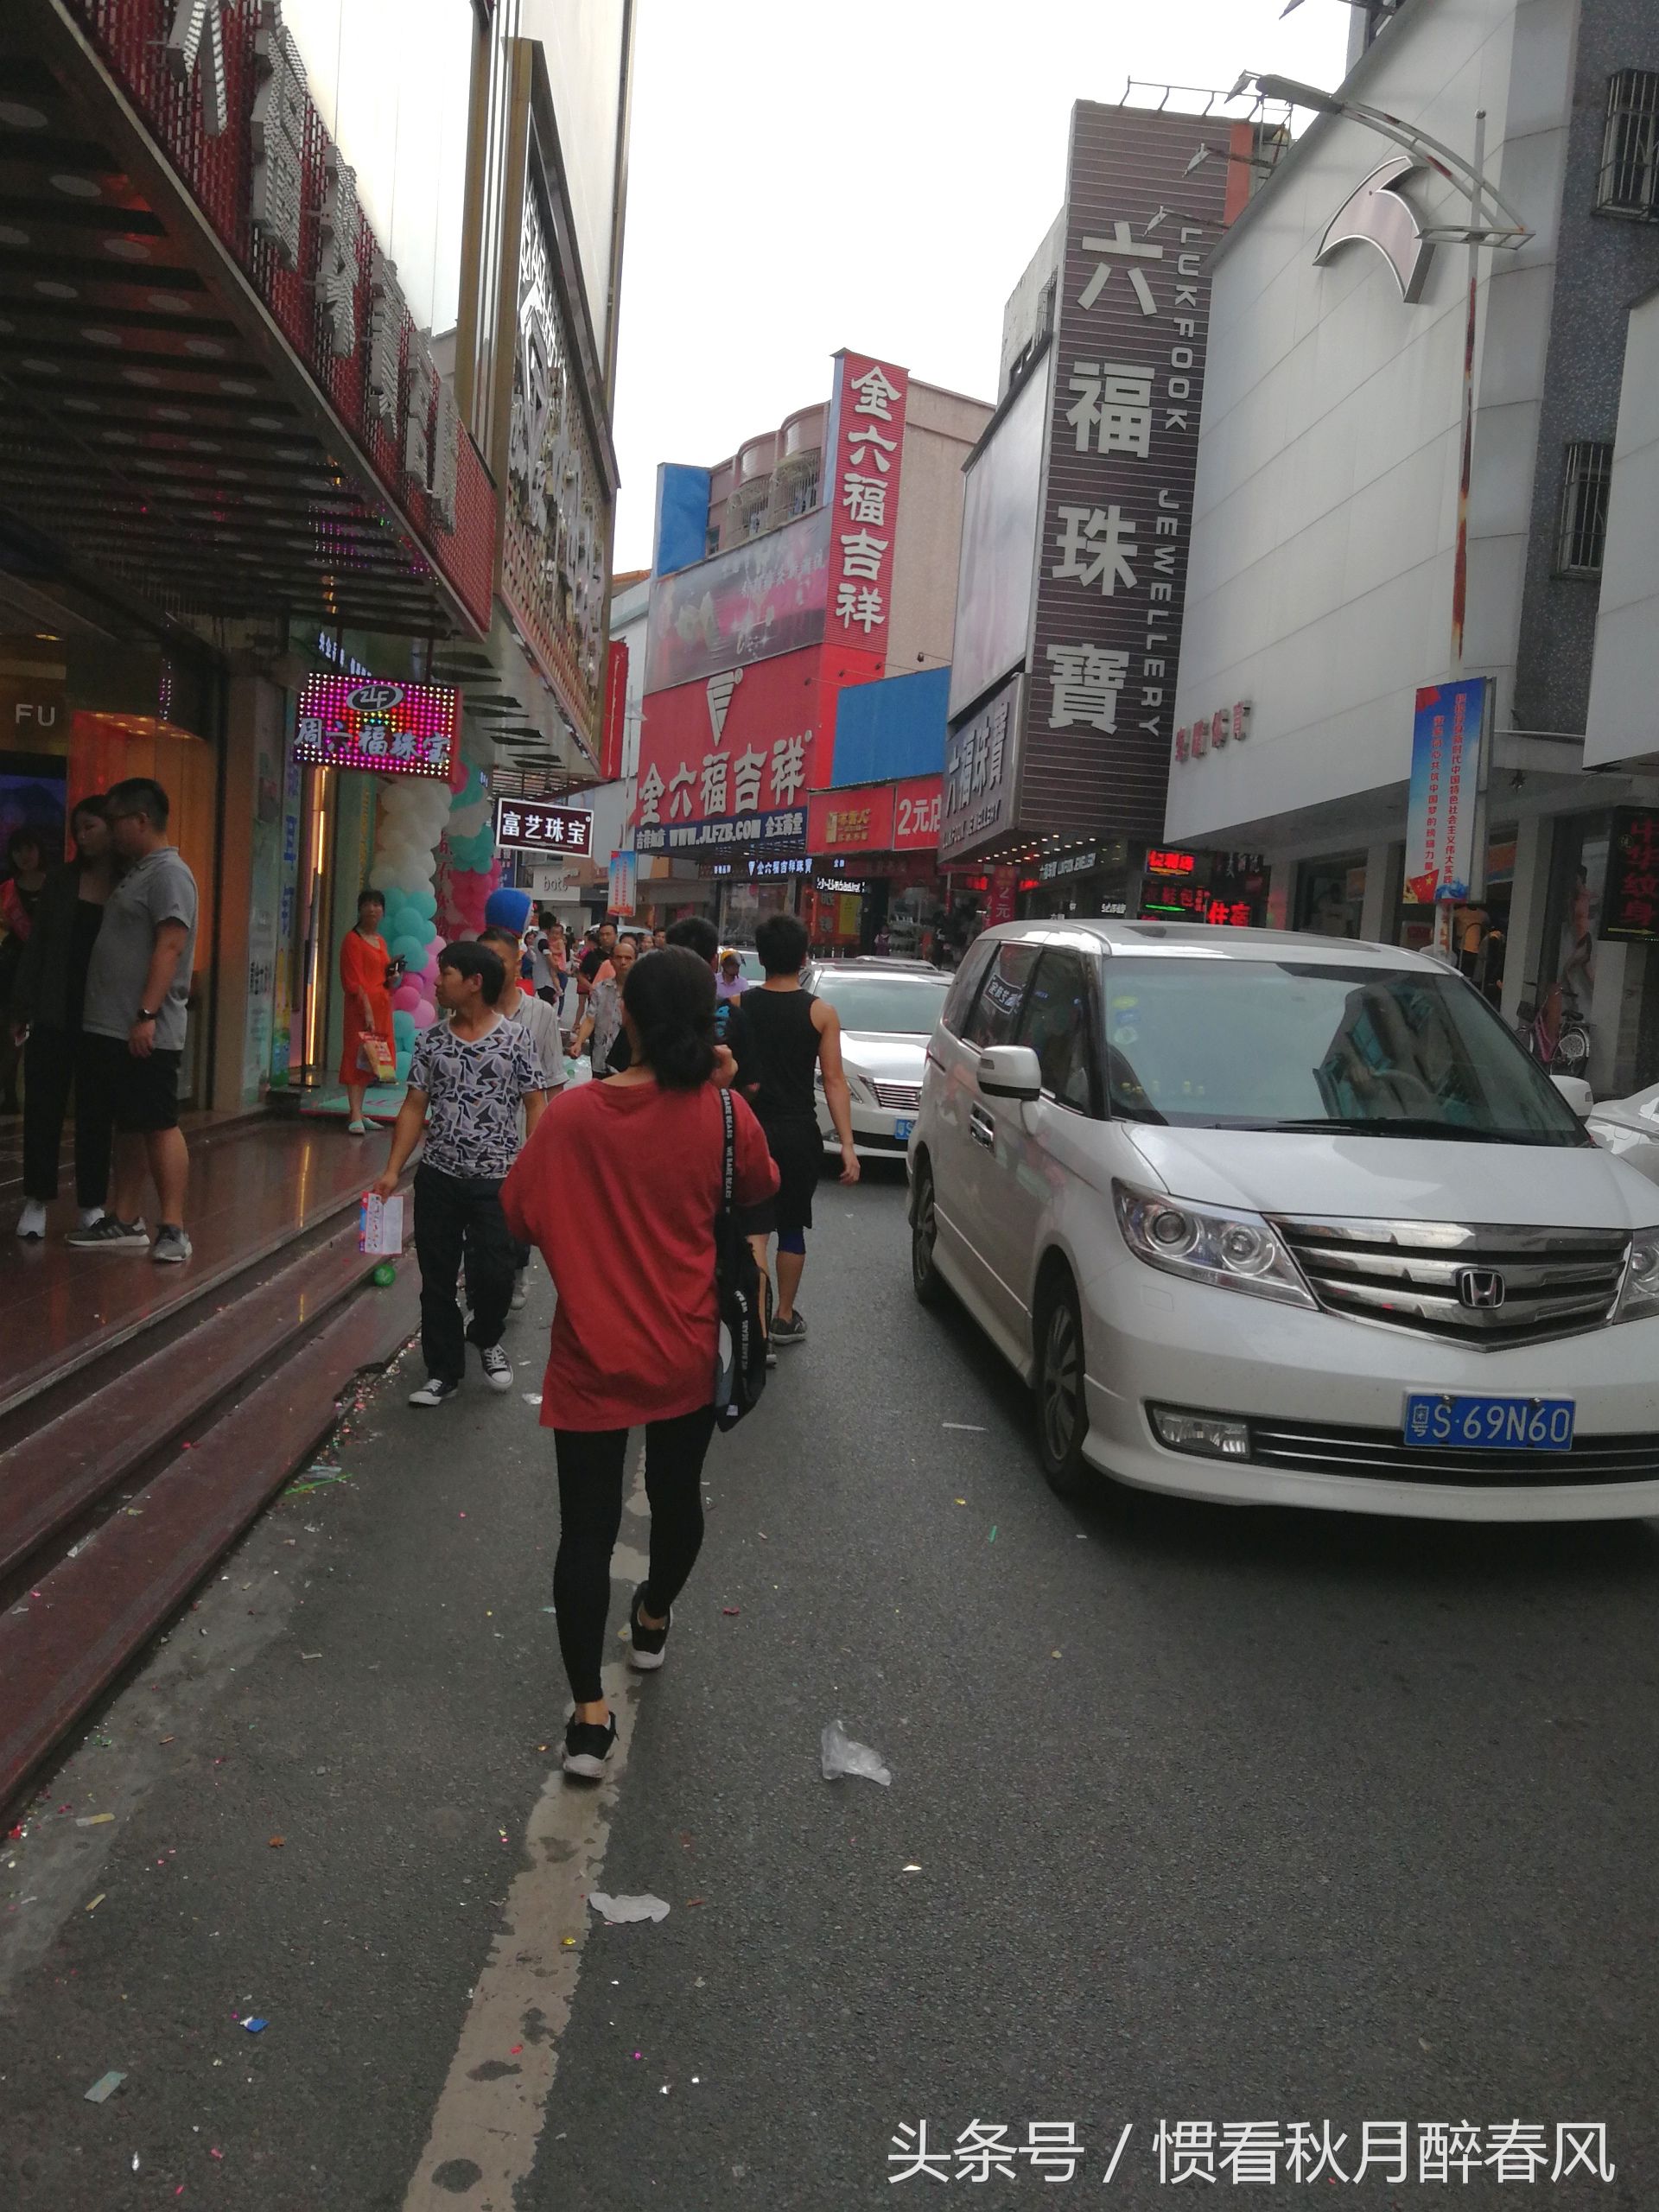 这里就是东莞塘厦镇最繁华的地方,逛街的好去